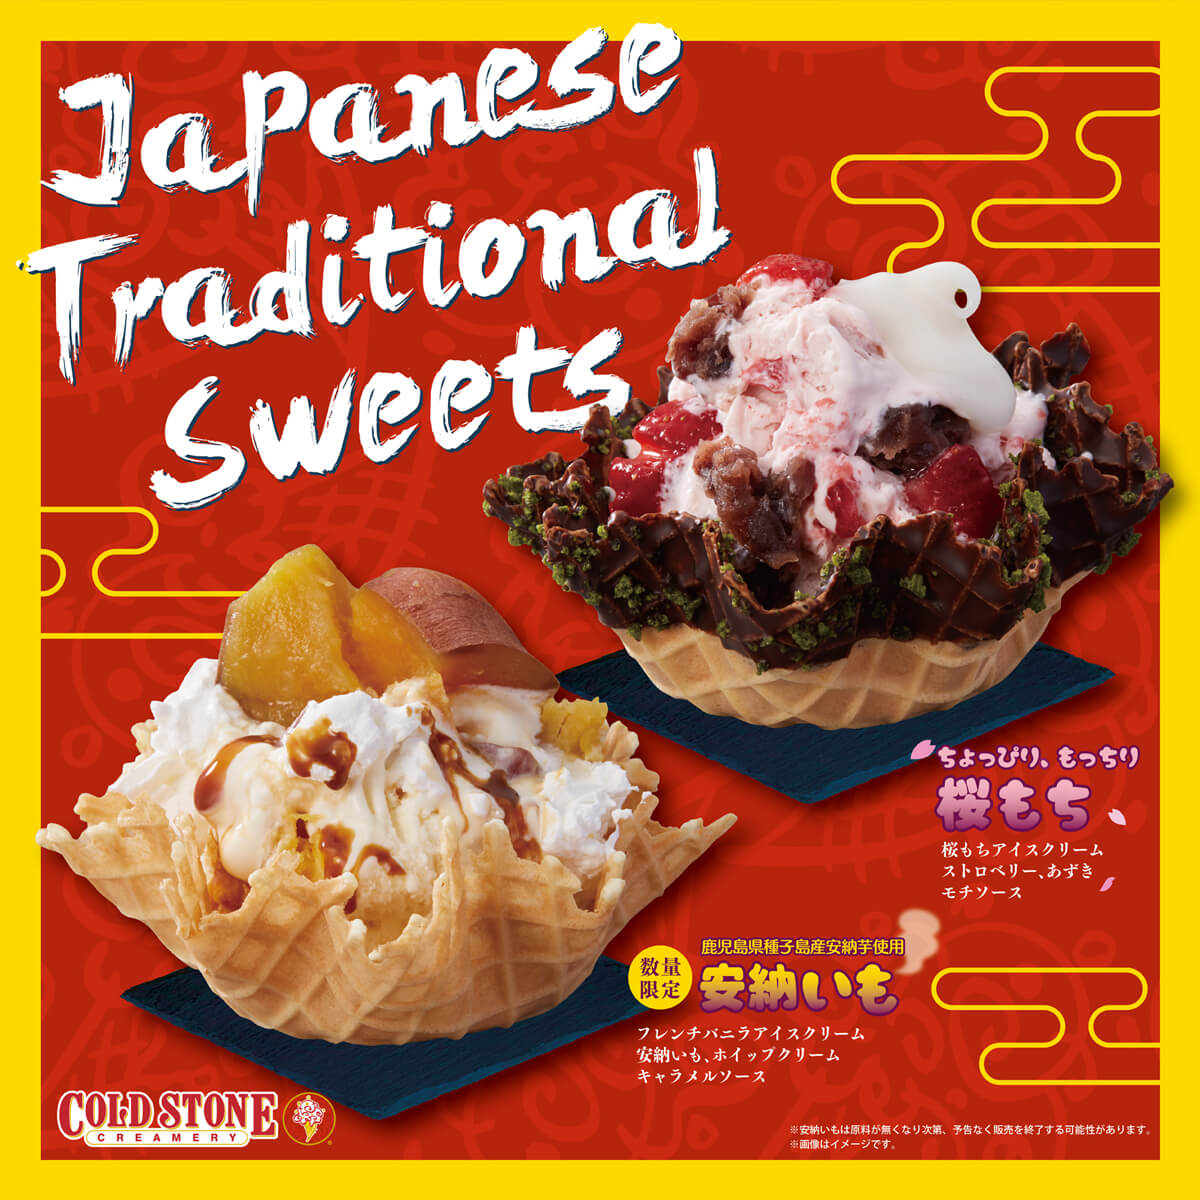 コールドストーンクリーマリージャパン | Cold Stone Creamery Japan